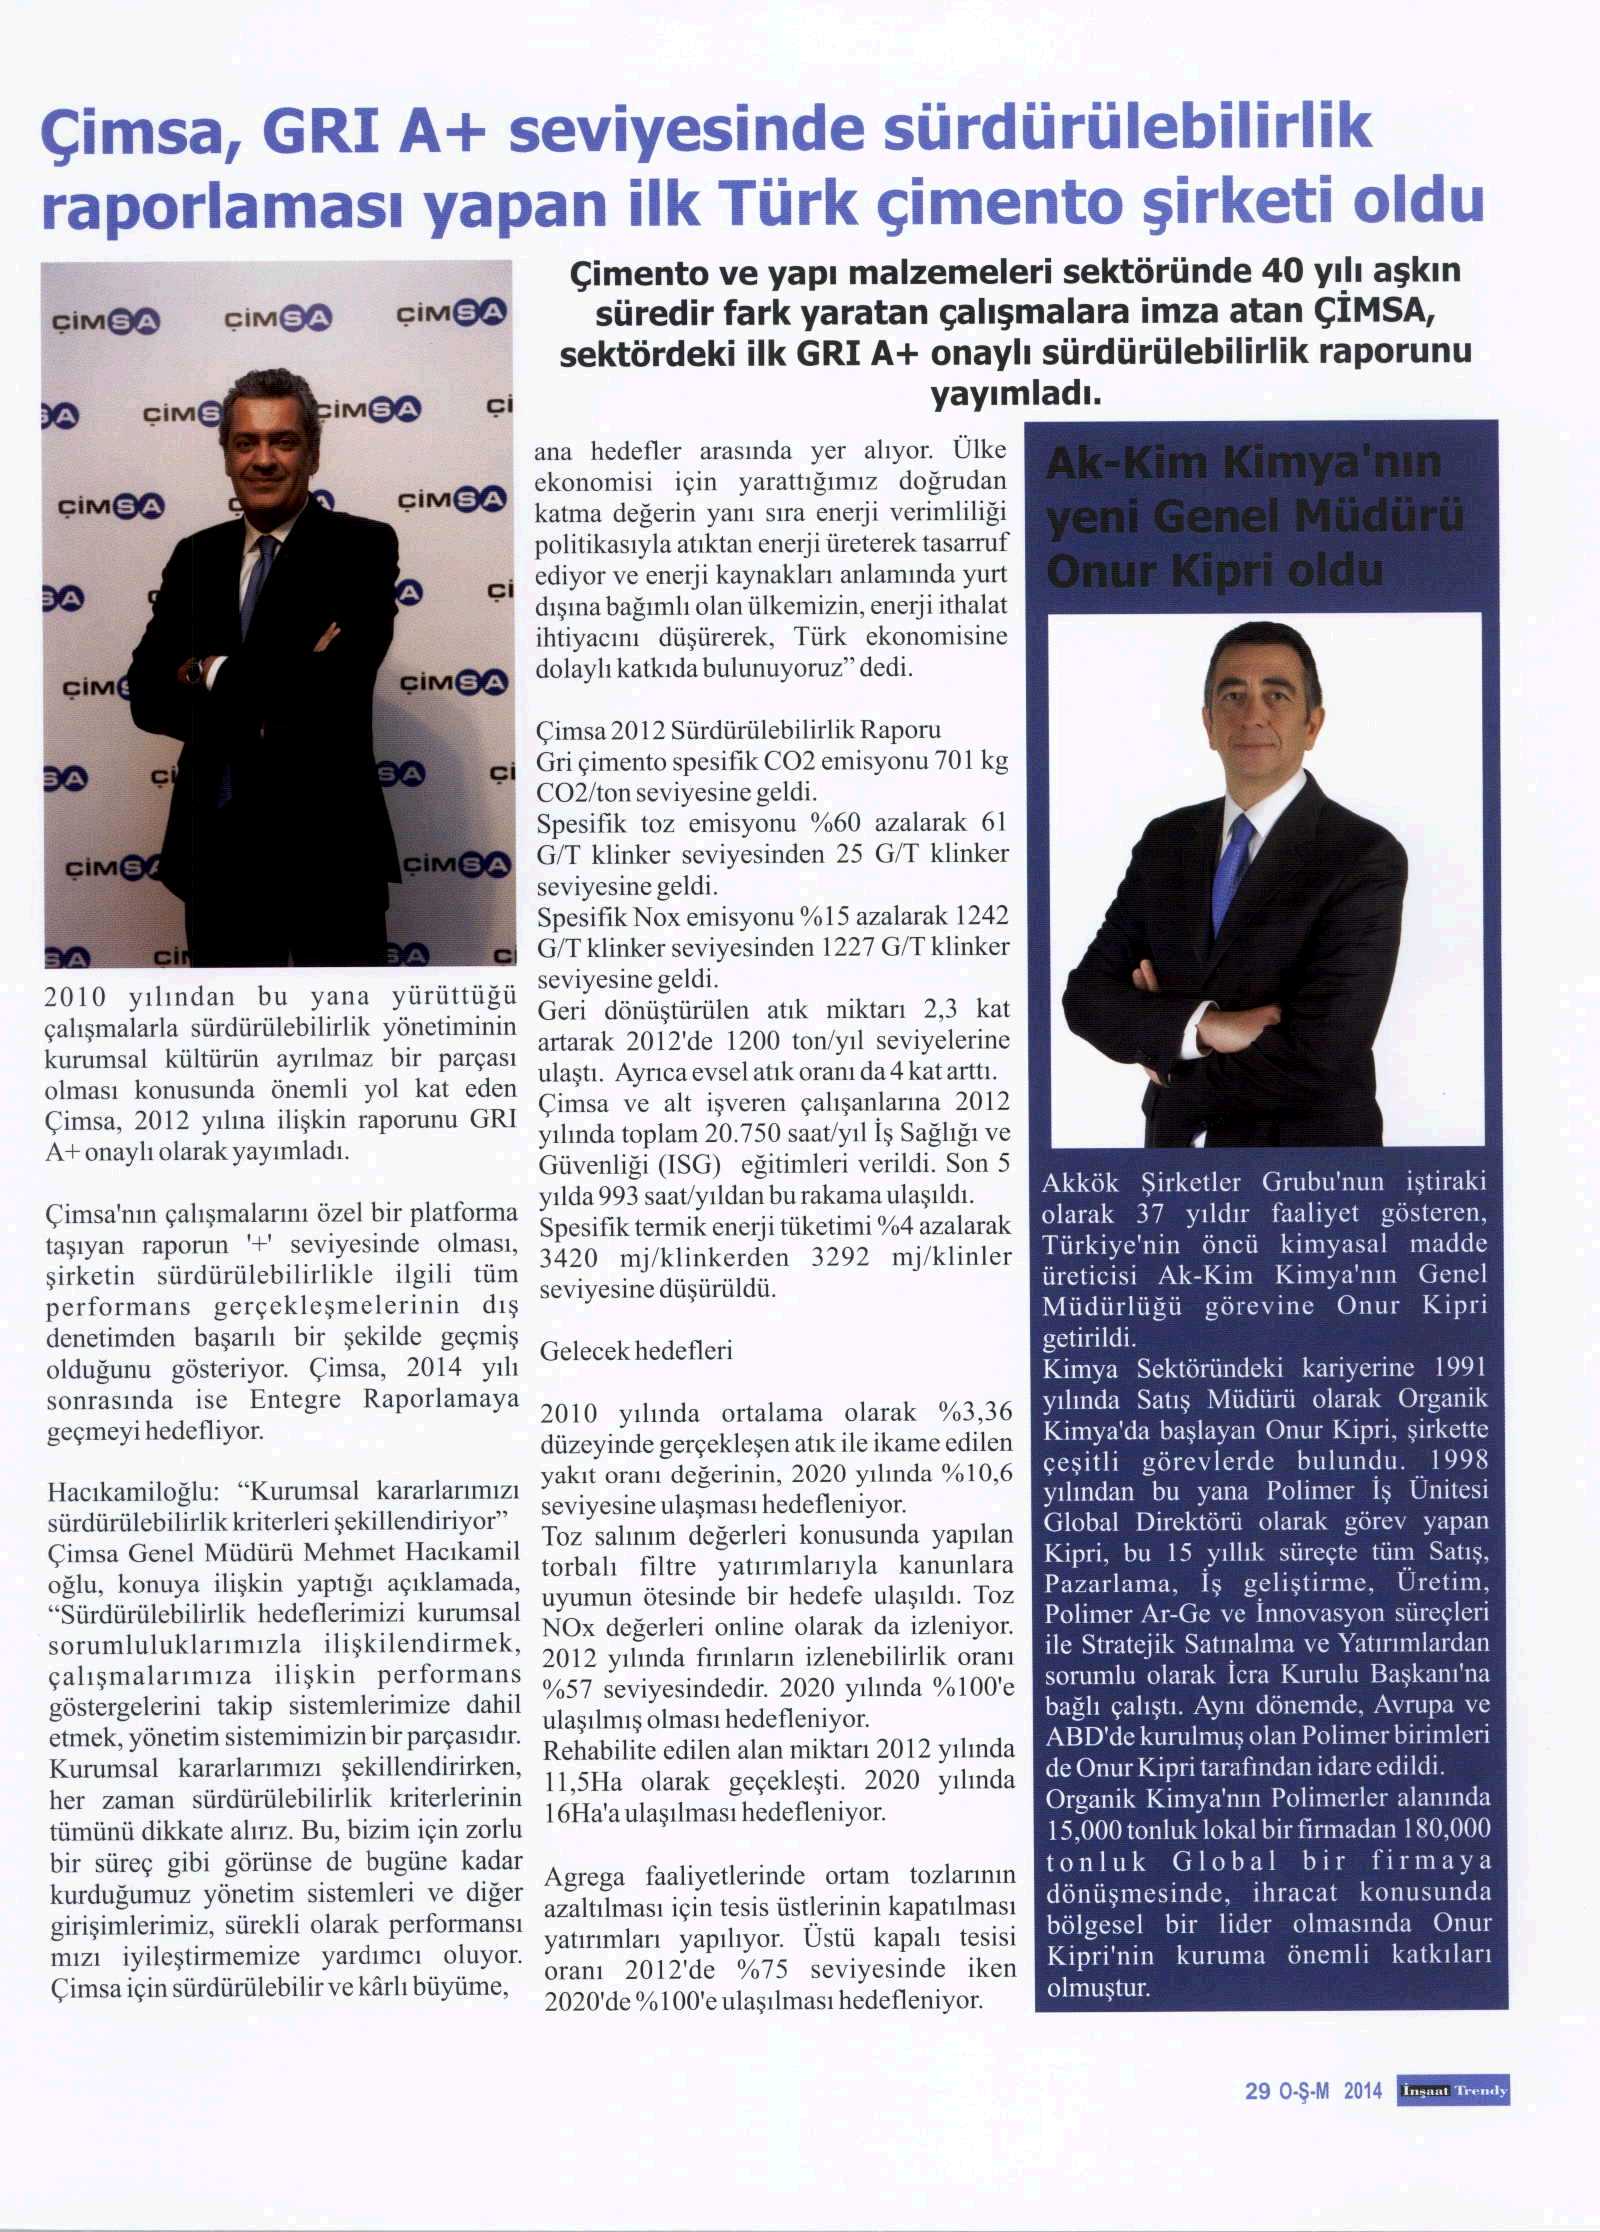 Akkim Kimya’nın Yeni Genel Müdürü Onur Kipri / İnşaat Trendy / 1 Ocak 2014